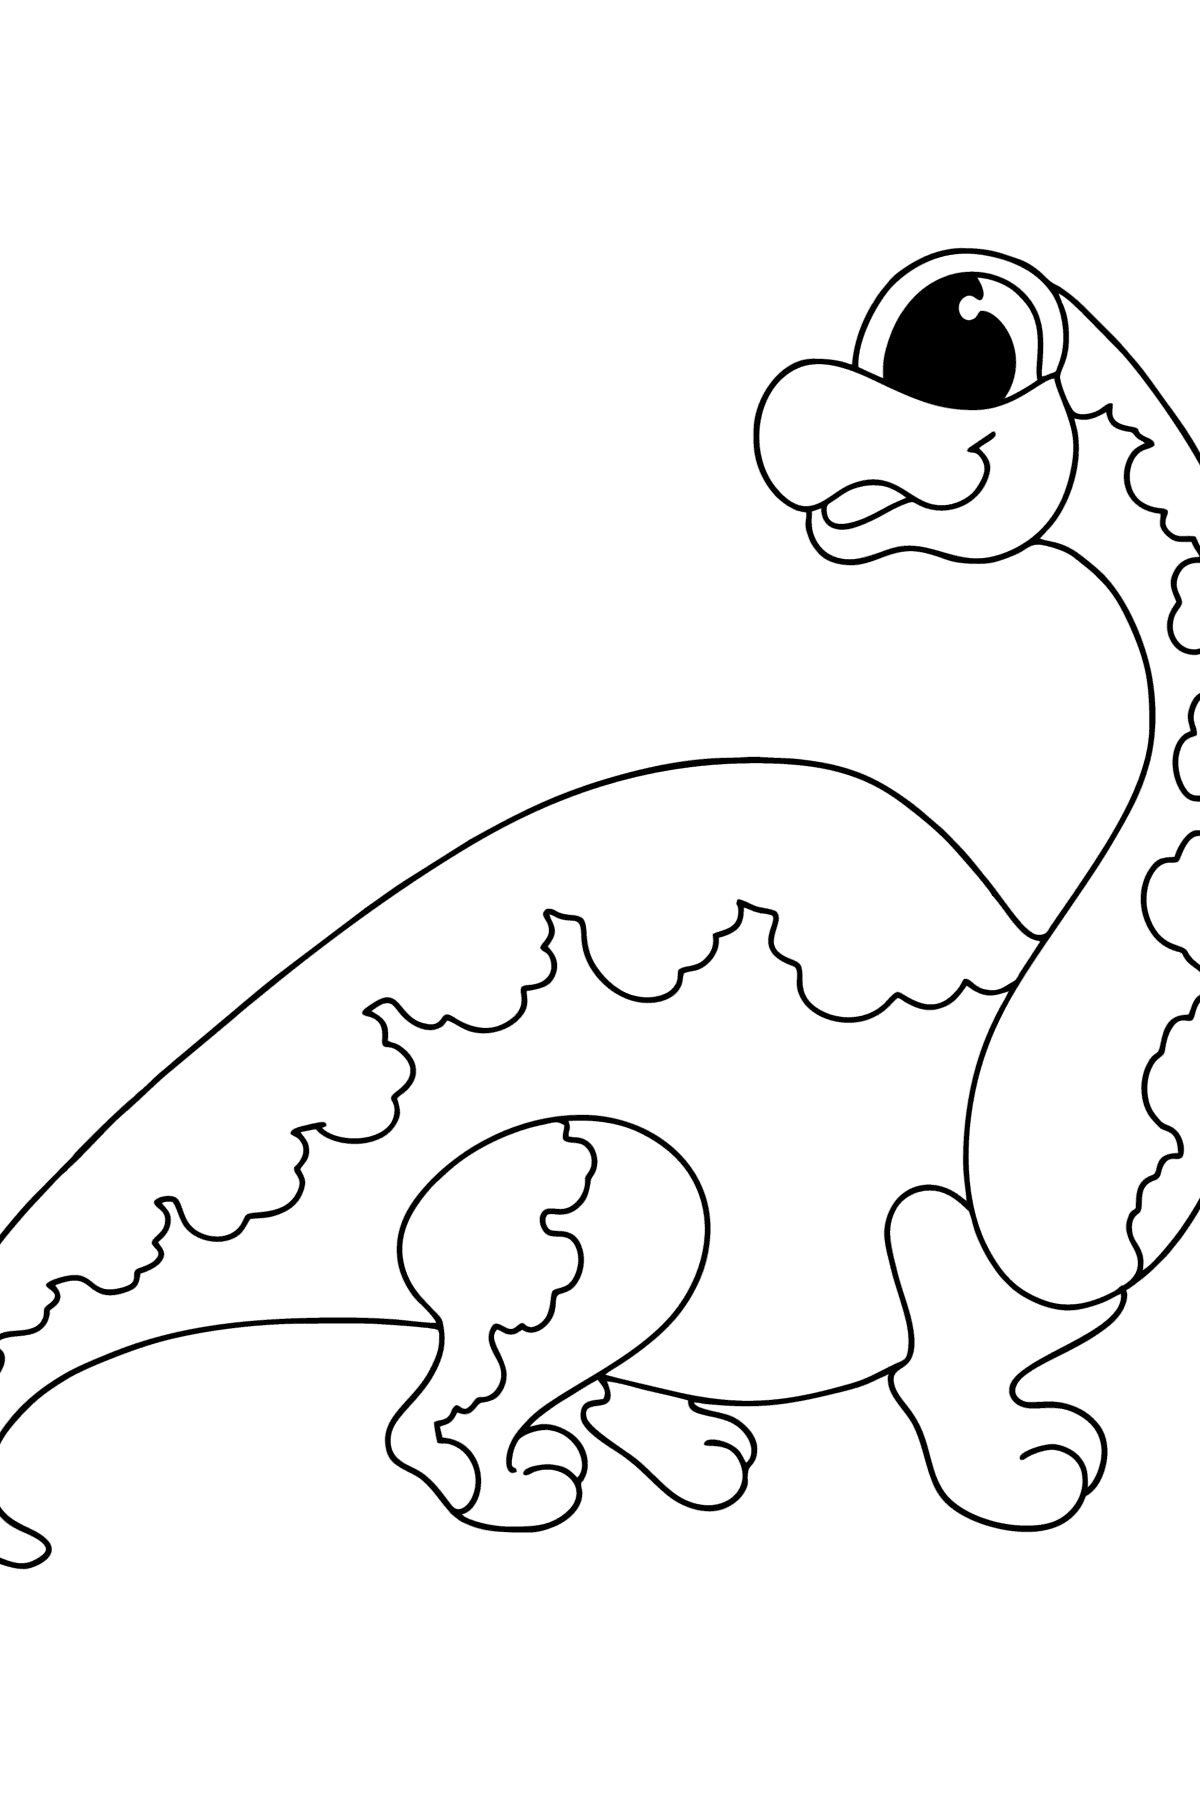 Målarbild brachiosaurus - Målarbilder För barn